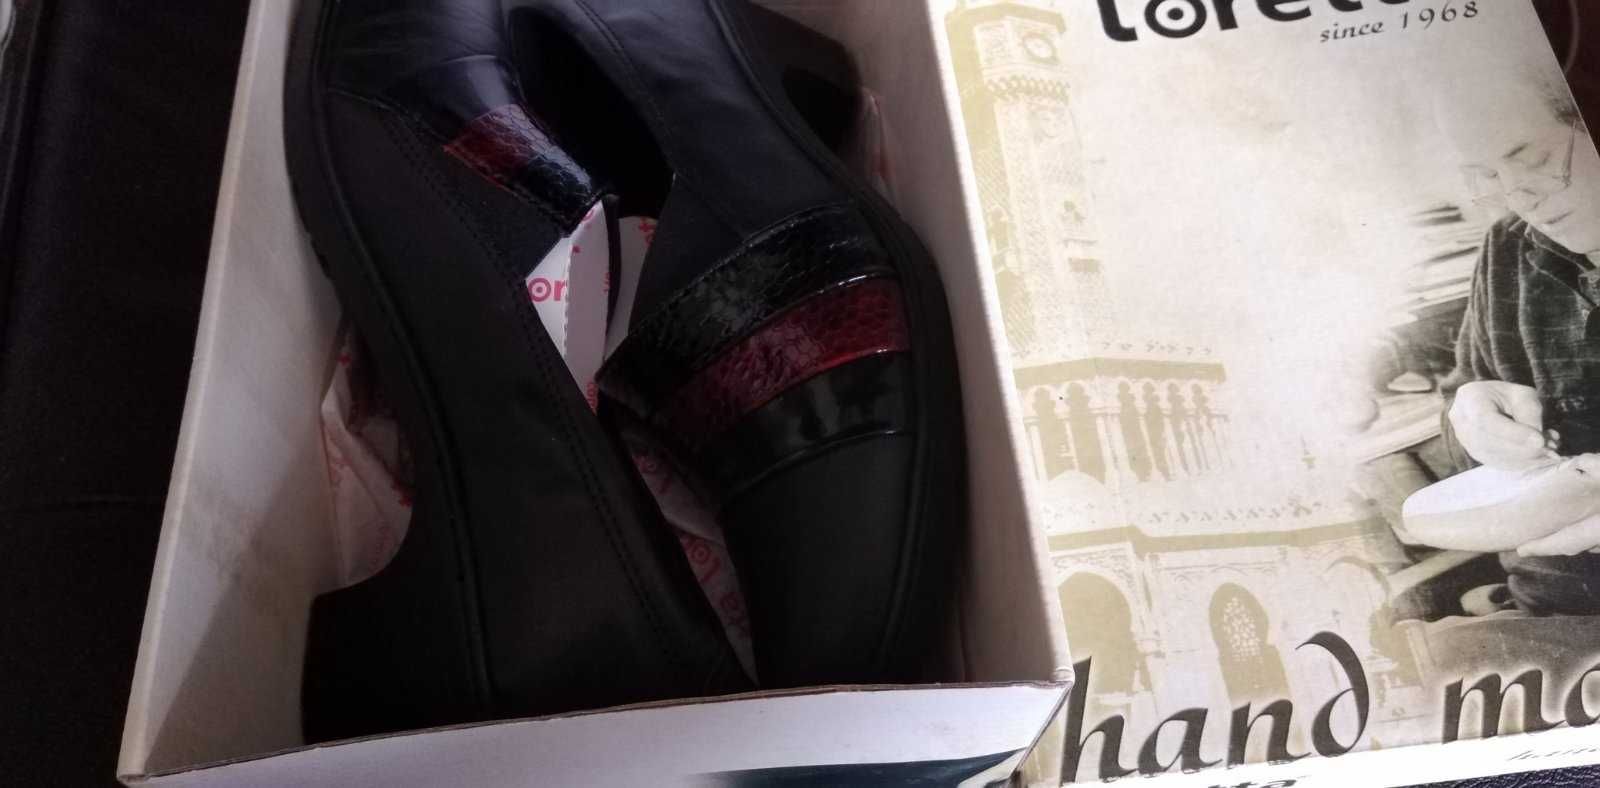 Дамски обувки на среден ток - черни